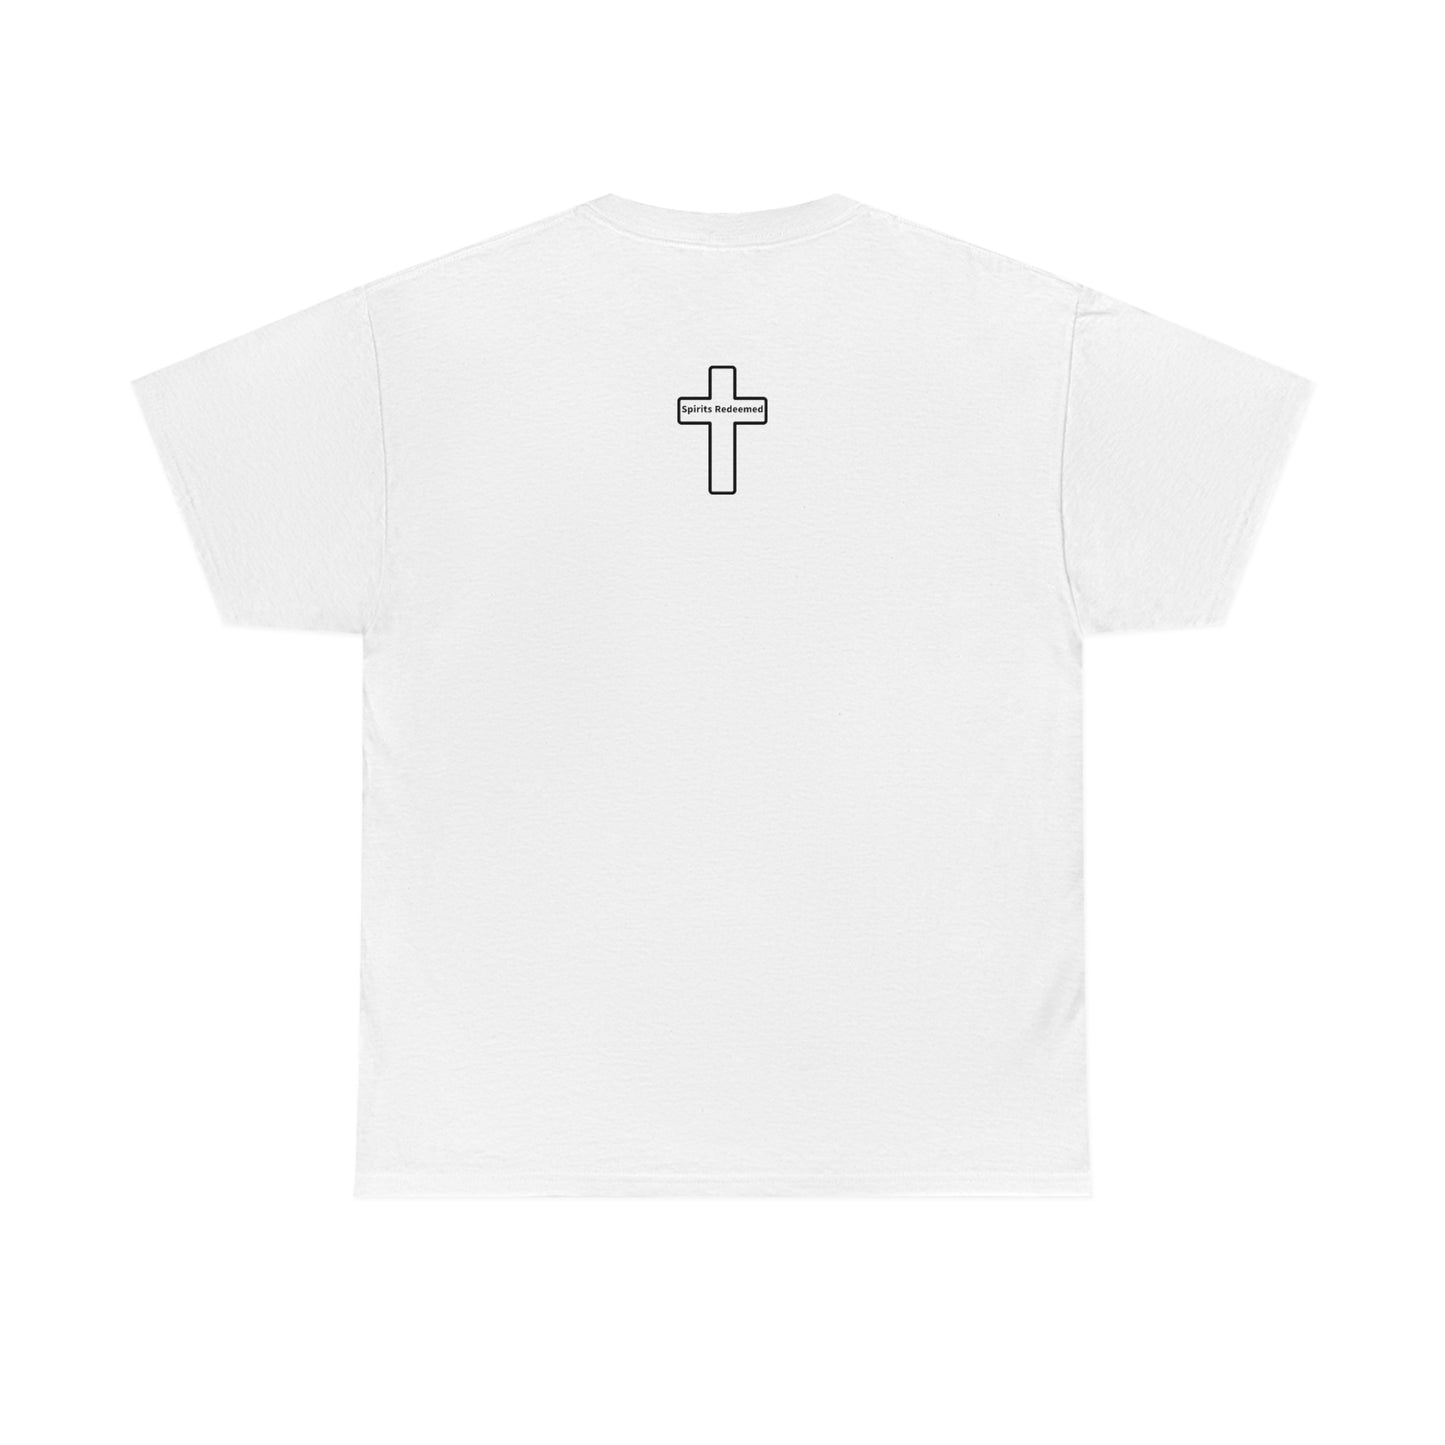 Philippians 4:13 unisex T-shirt